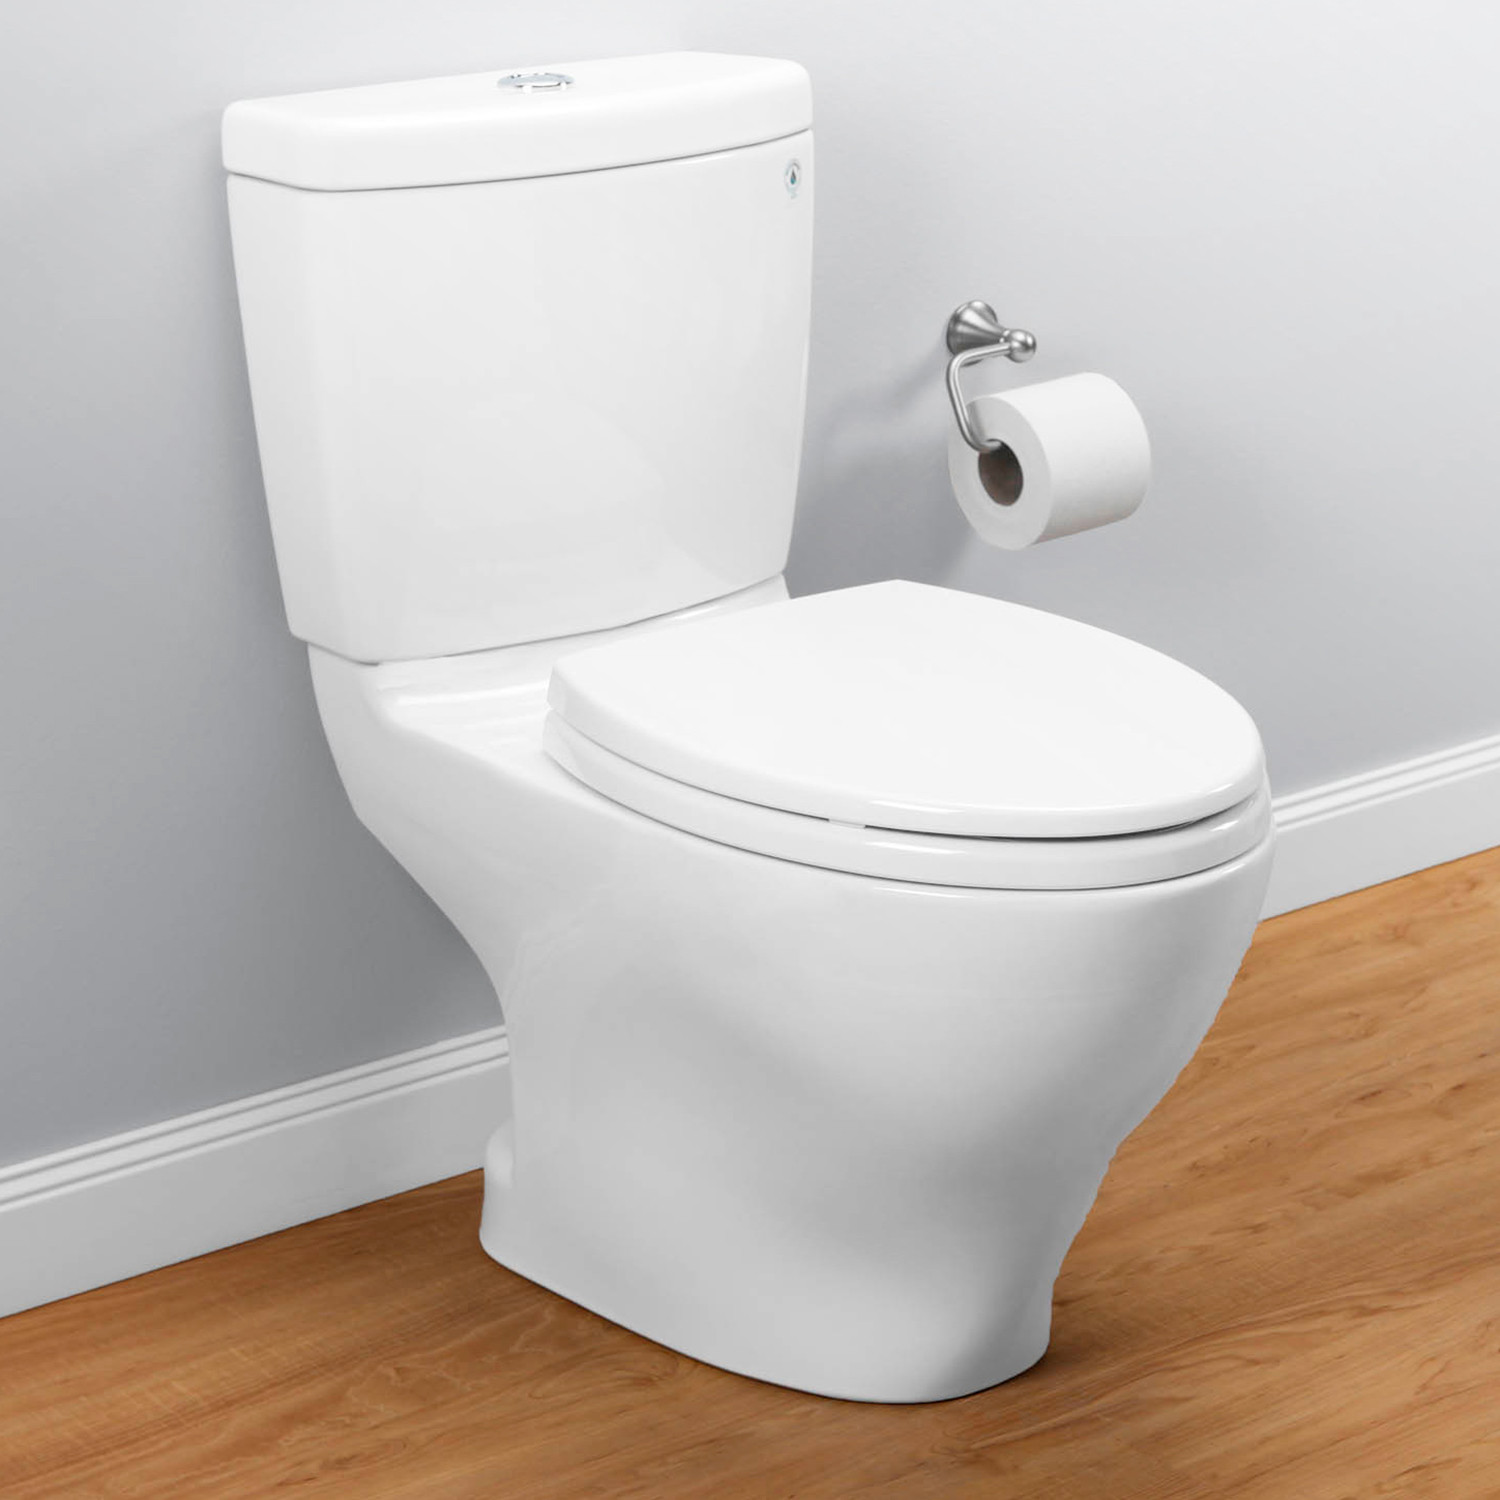 Toto Dual Flush Toilet Installation - Printable Templates Protal